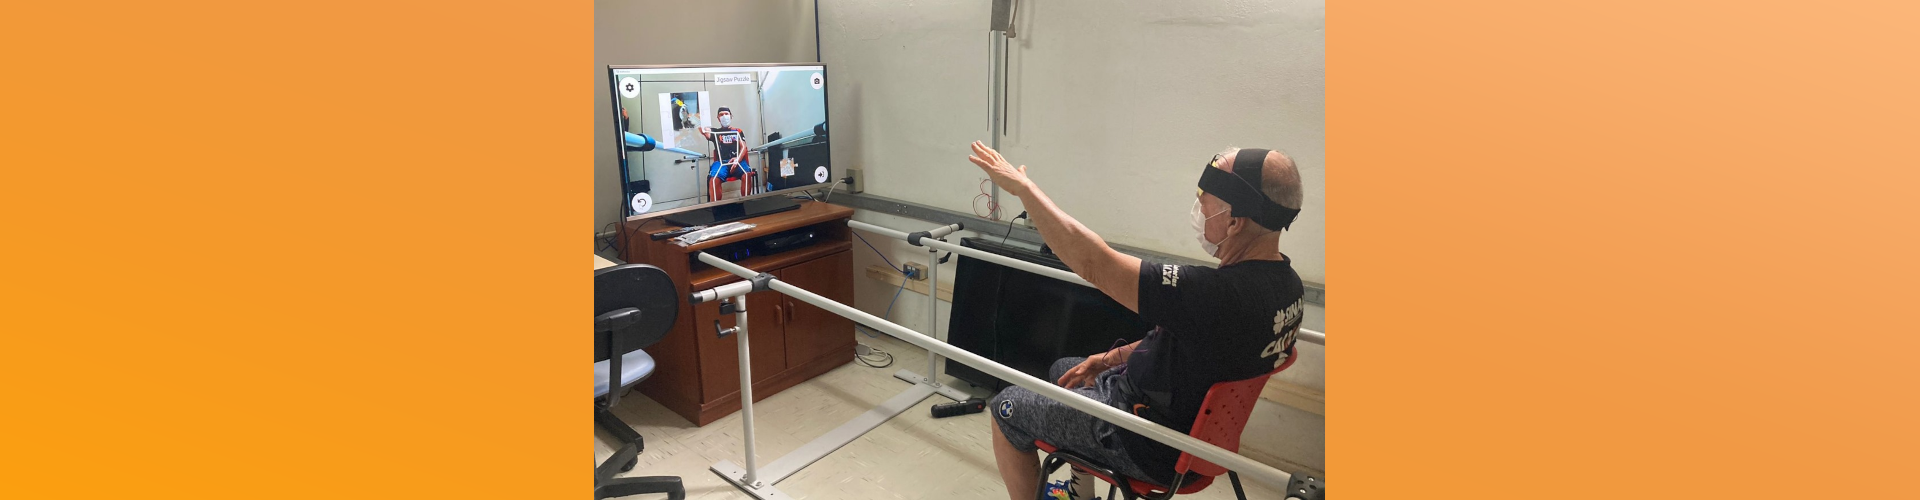 Laboratório do IFGW convida pessoas com sequelas moderadas de AVC para participarem de estudo sobre reabilitação com realidade virtual.